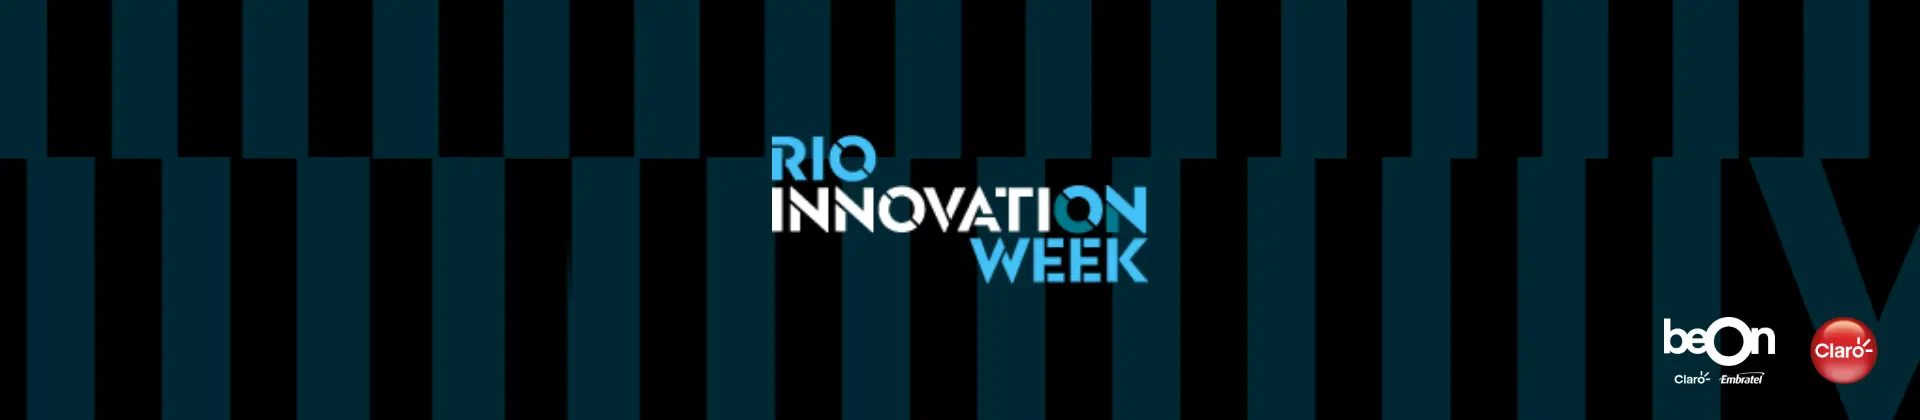 Banner com imagem preta e azul, escrita "RIO INNOVATION WEEK"